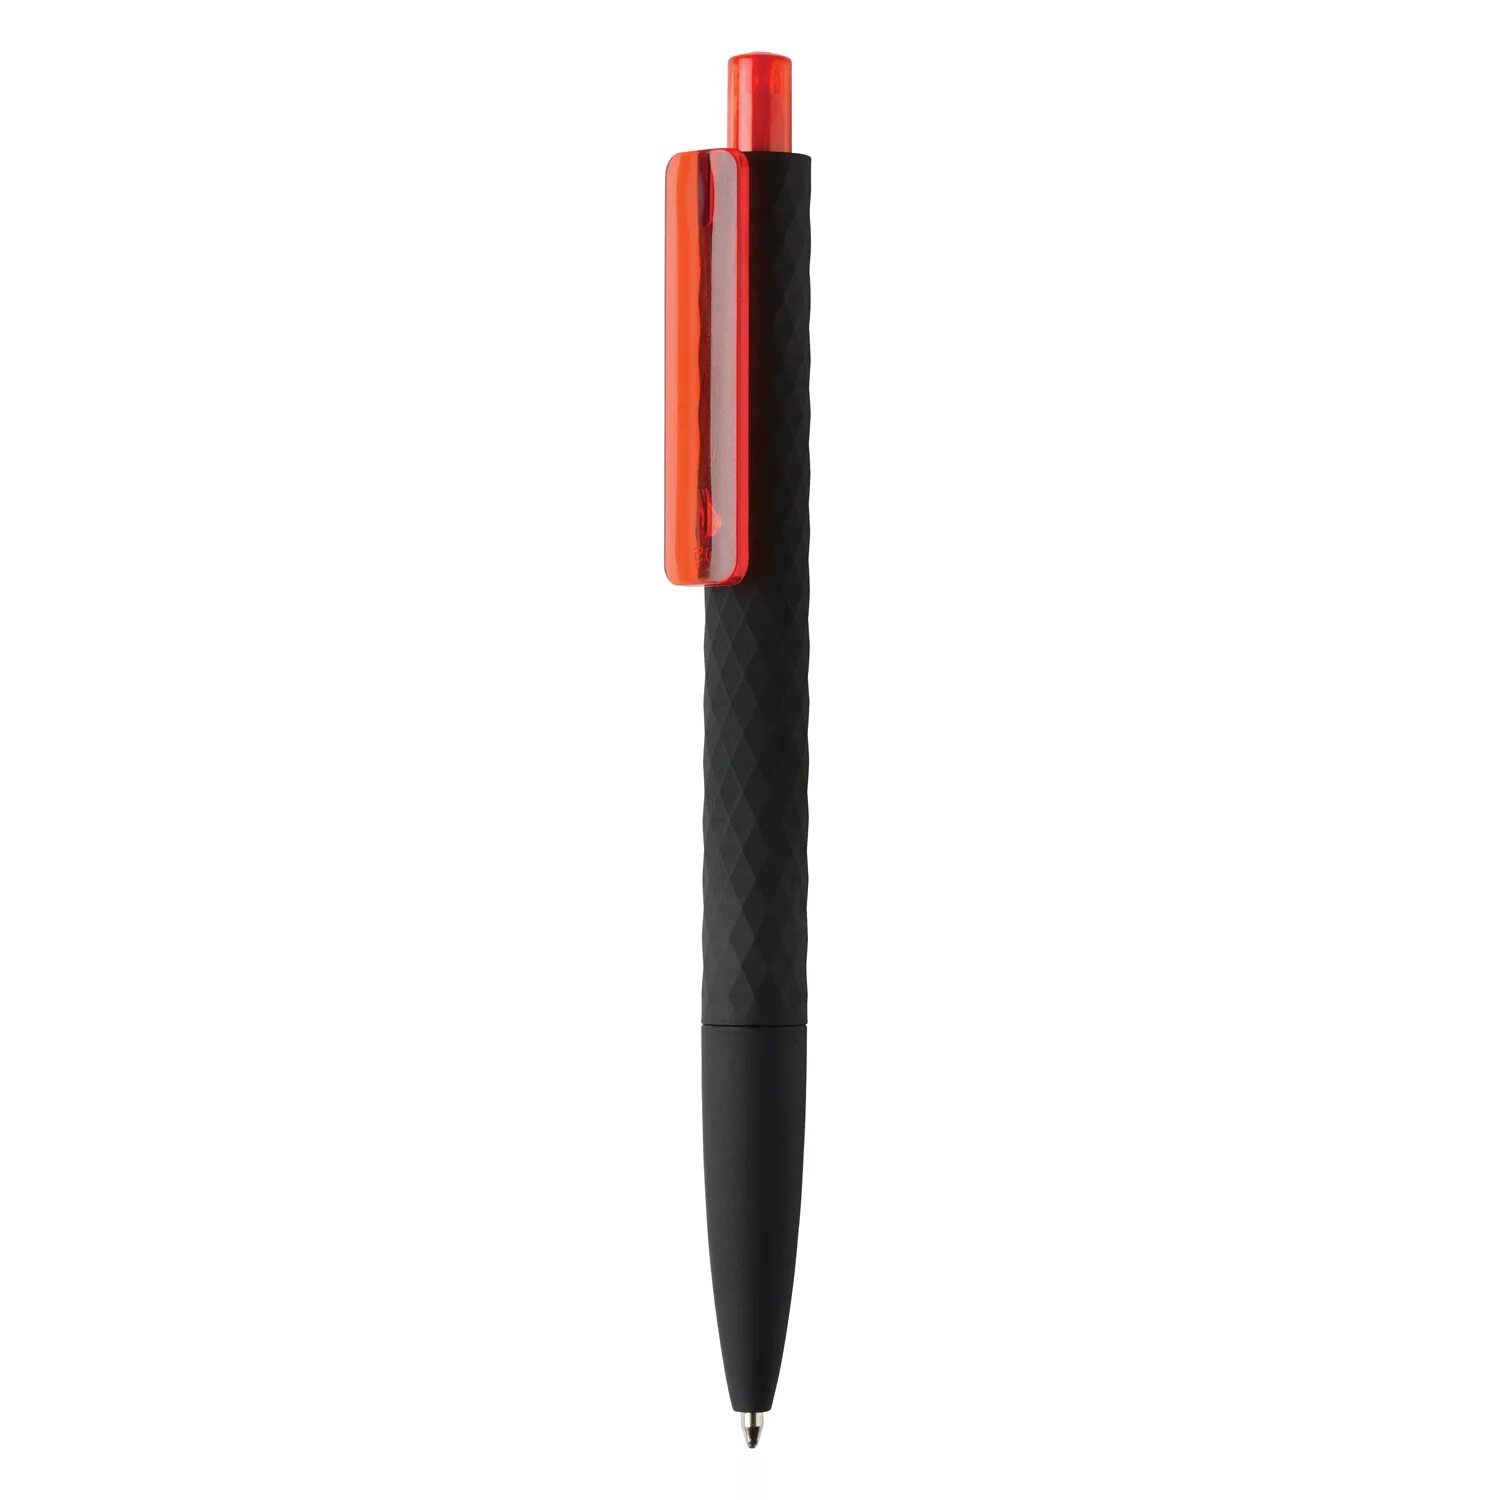 Новый черный ручки. Ручка шариковая Liberty Polished. Ручка Xtream 0.7. Ручка мультисистемная Rhodia Multi Pen, 3в1 (черный+красный+кар 0,5), черный. Черная ручка.